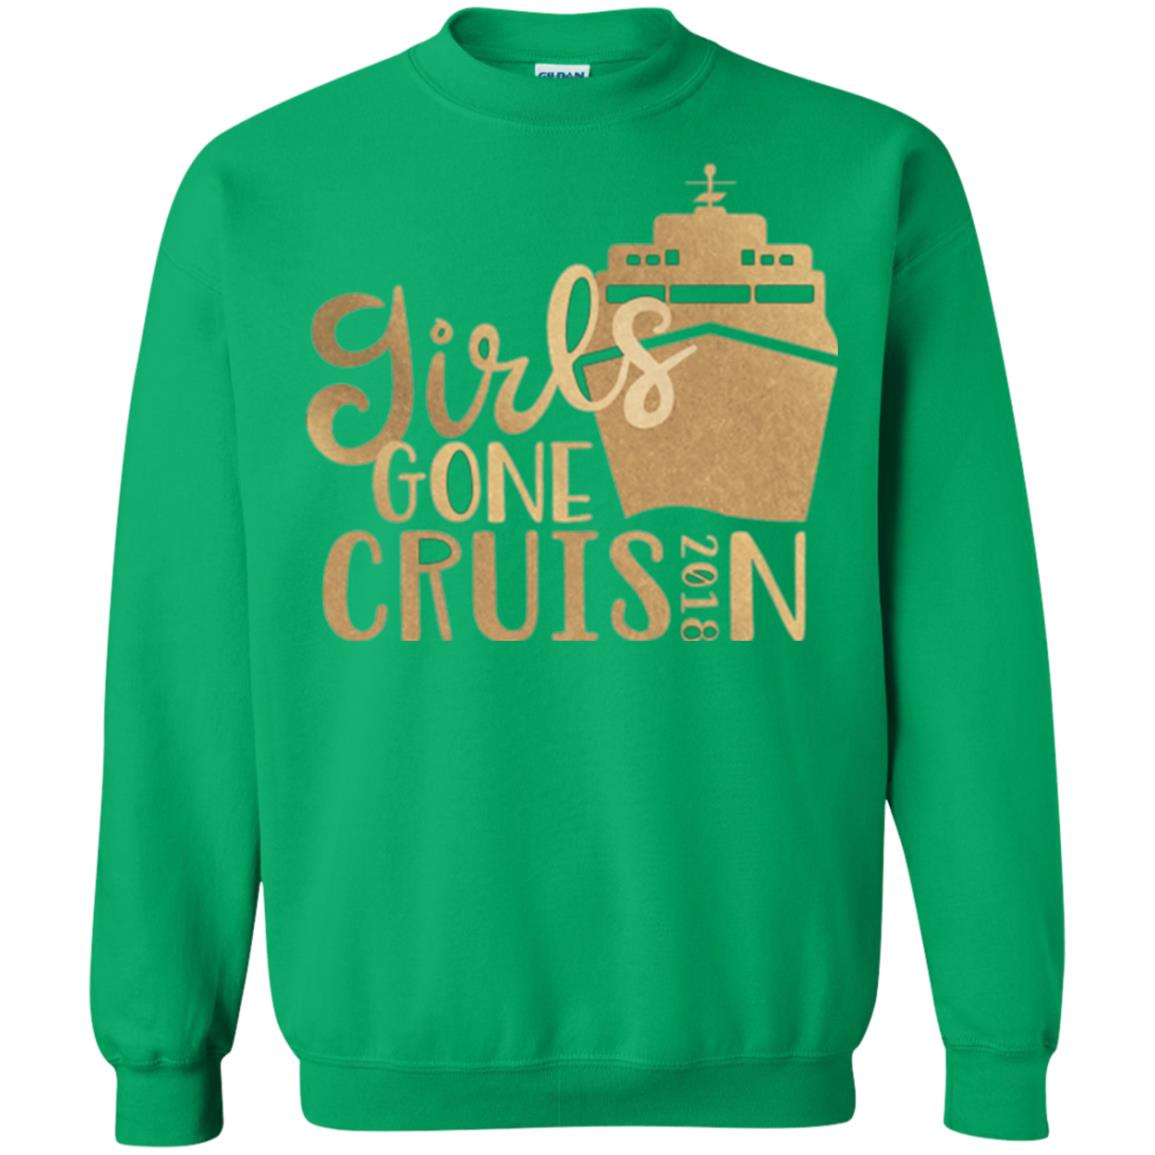 Inktee Store - Girls Gone Cruisin Vacation Shirt - Girls Cruise 2018 Sweatshirt Image